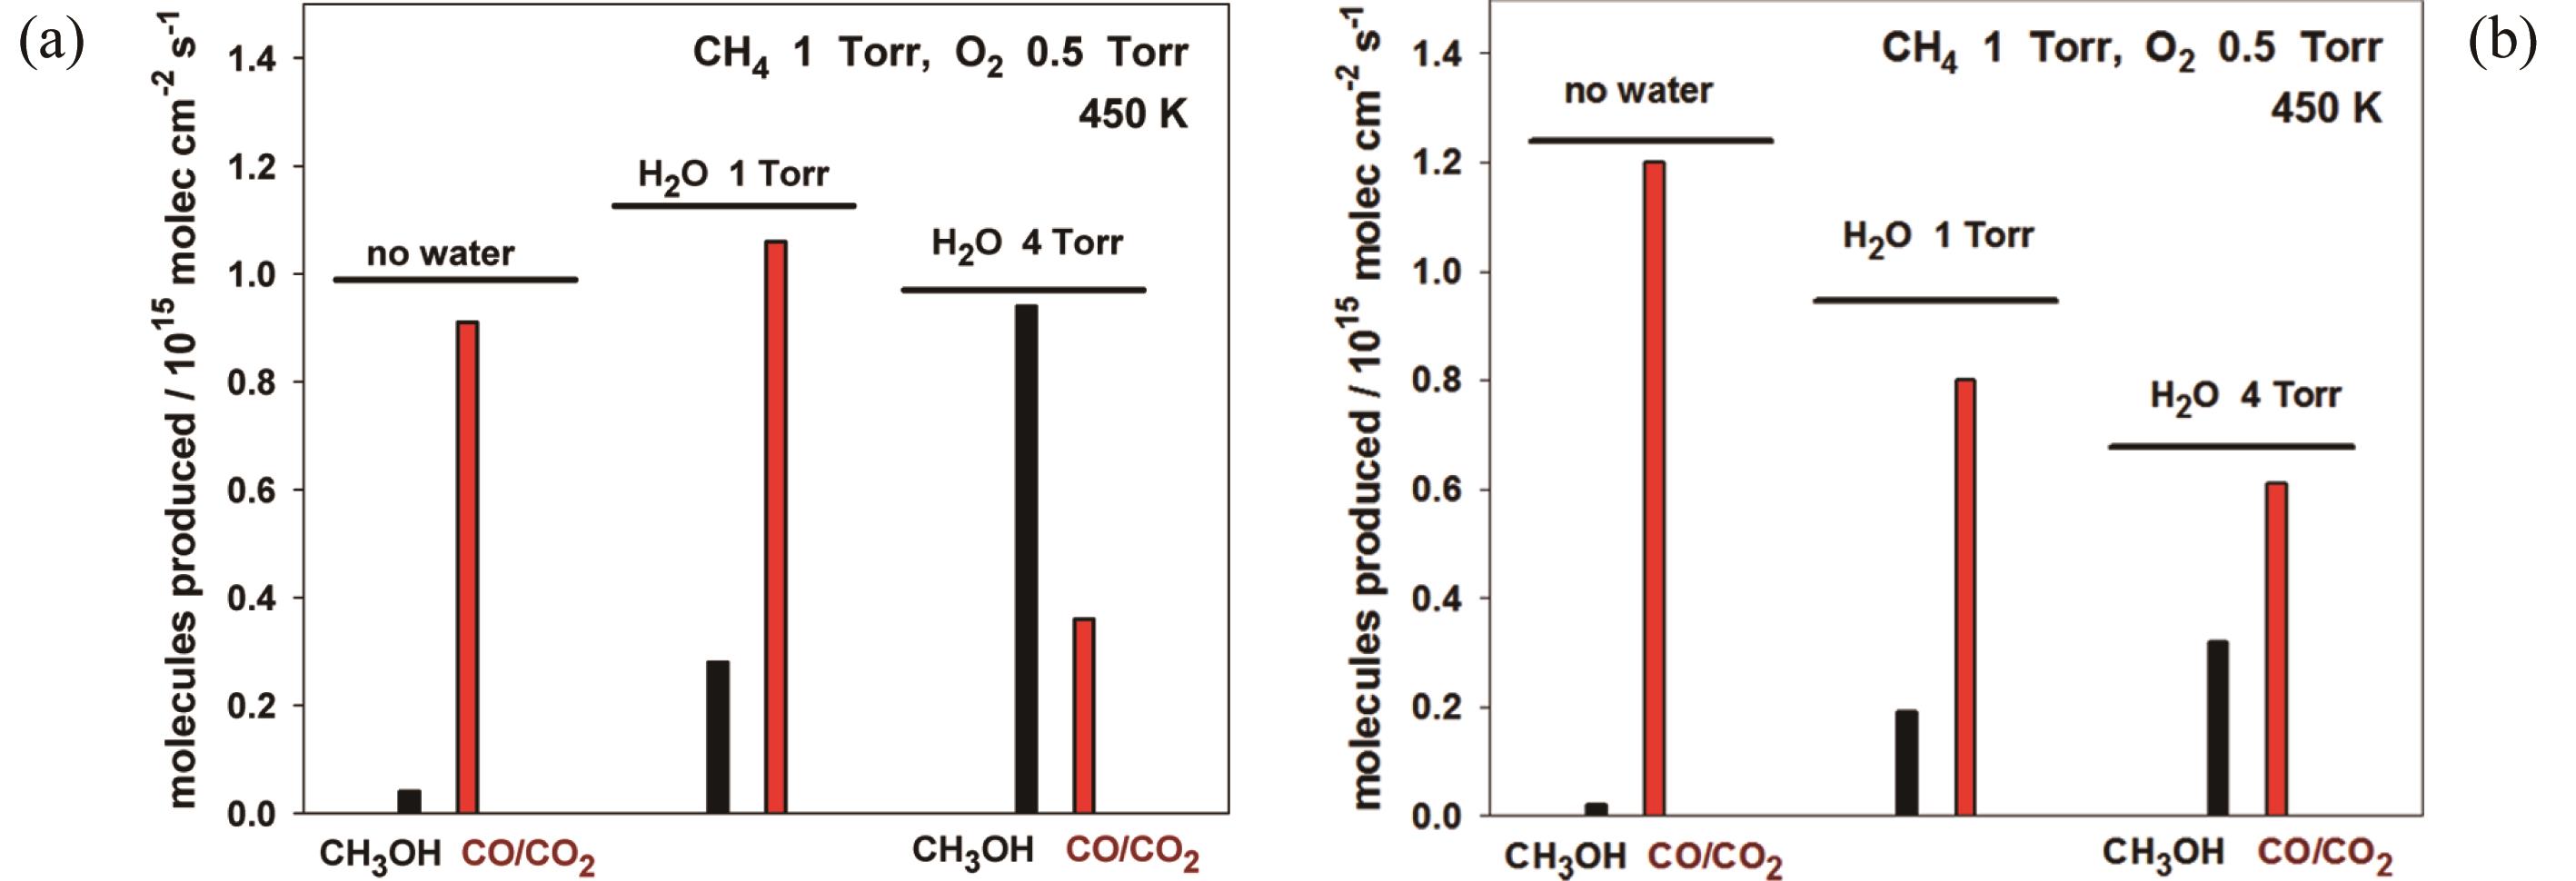 甲烷直接催化氧化制备甲醇近期研究进展